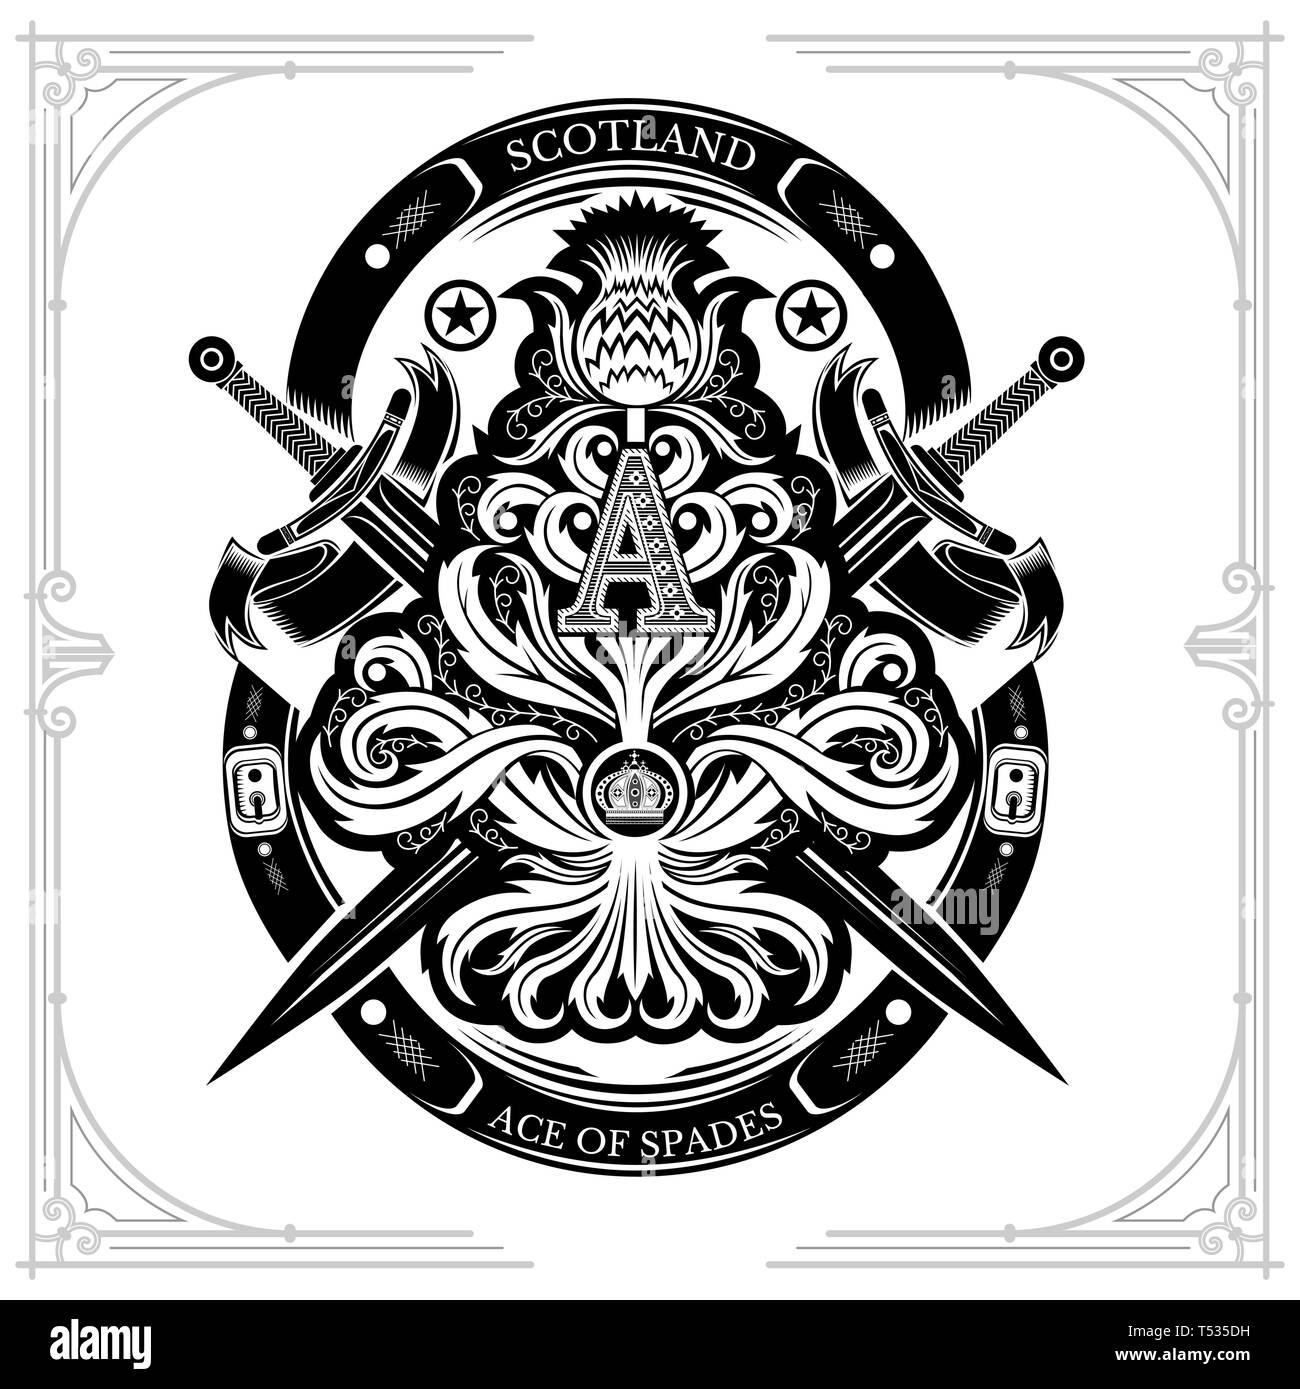 Ace of Spades von Thistle florales Muster mit Kreuz und Schwert Großbuchstabe A nside. Design Element auf Weiß isoliert Stock Vektor